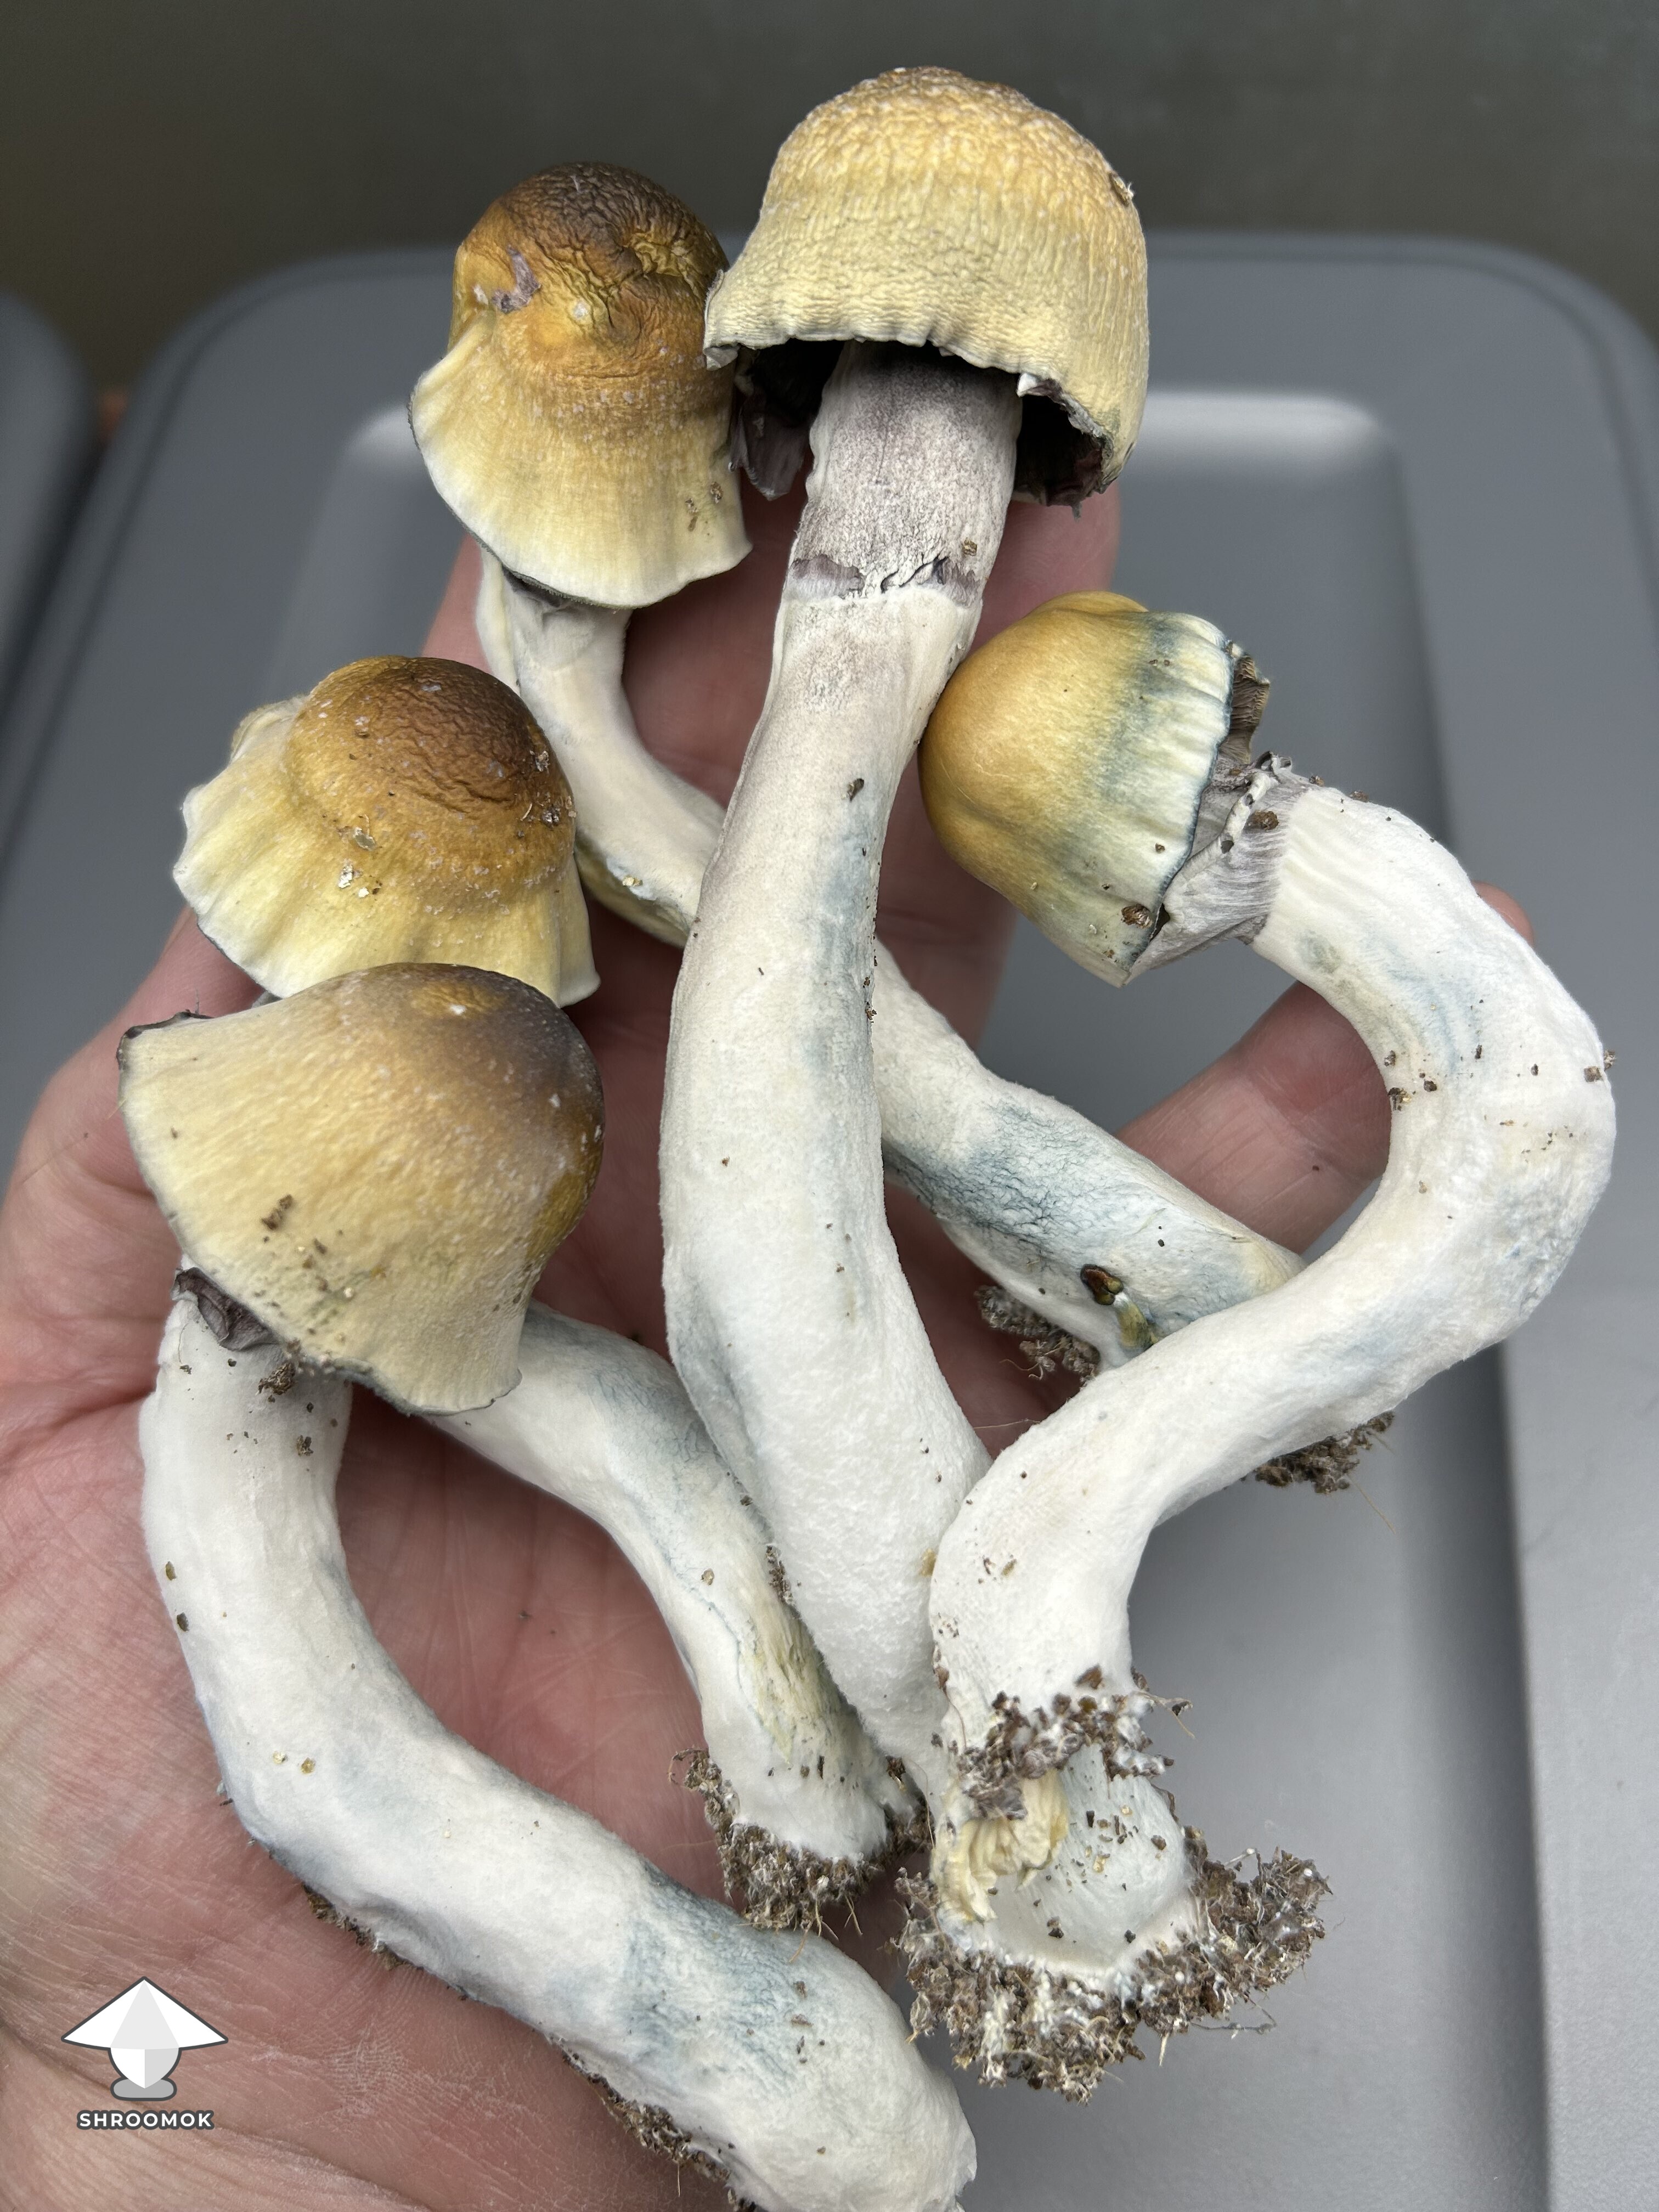 ODPE magic mushroom harvesting